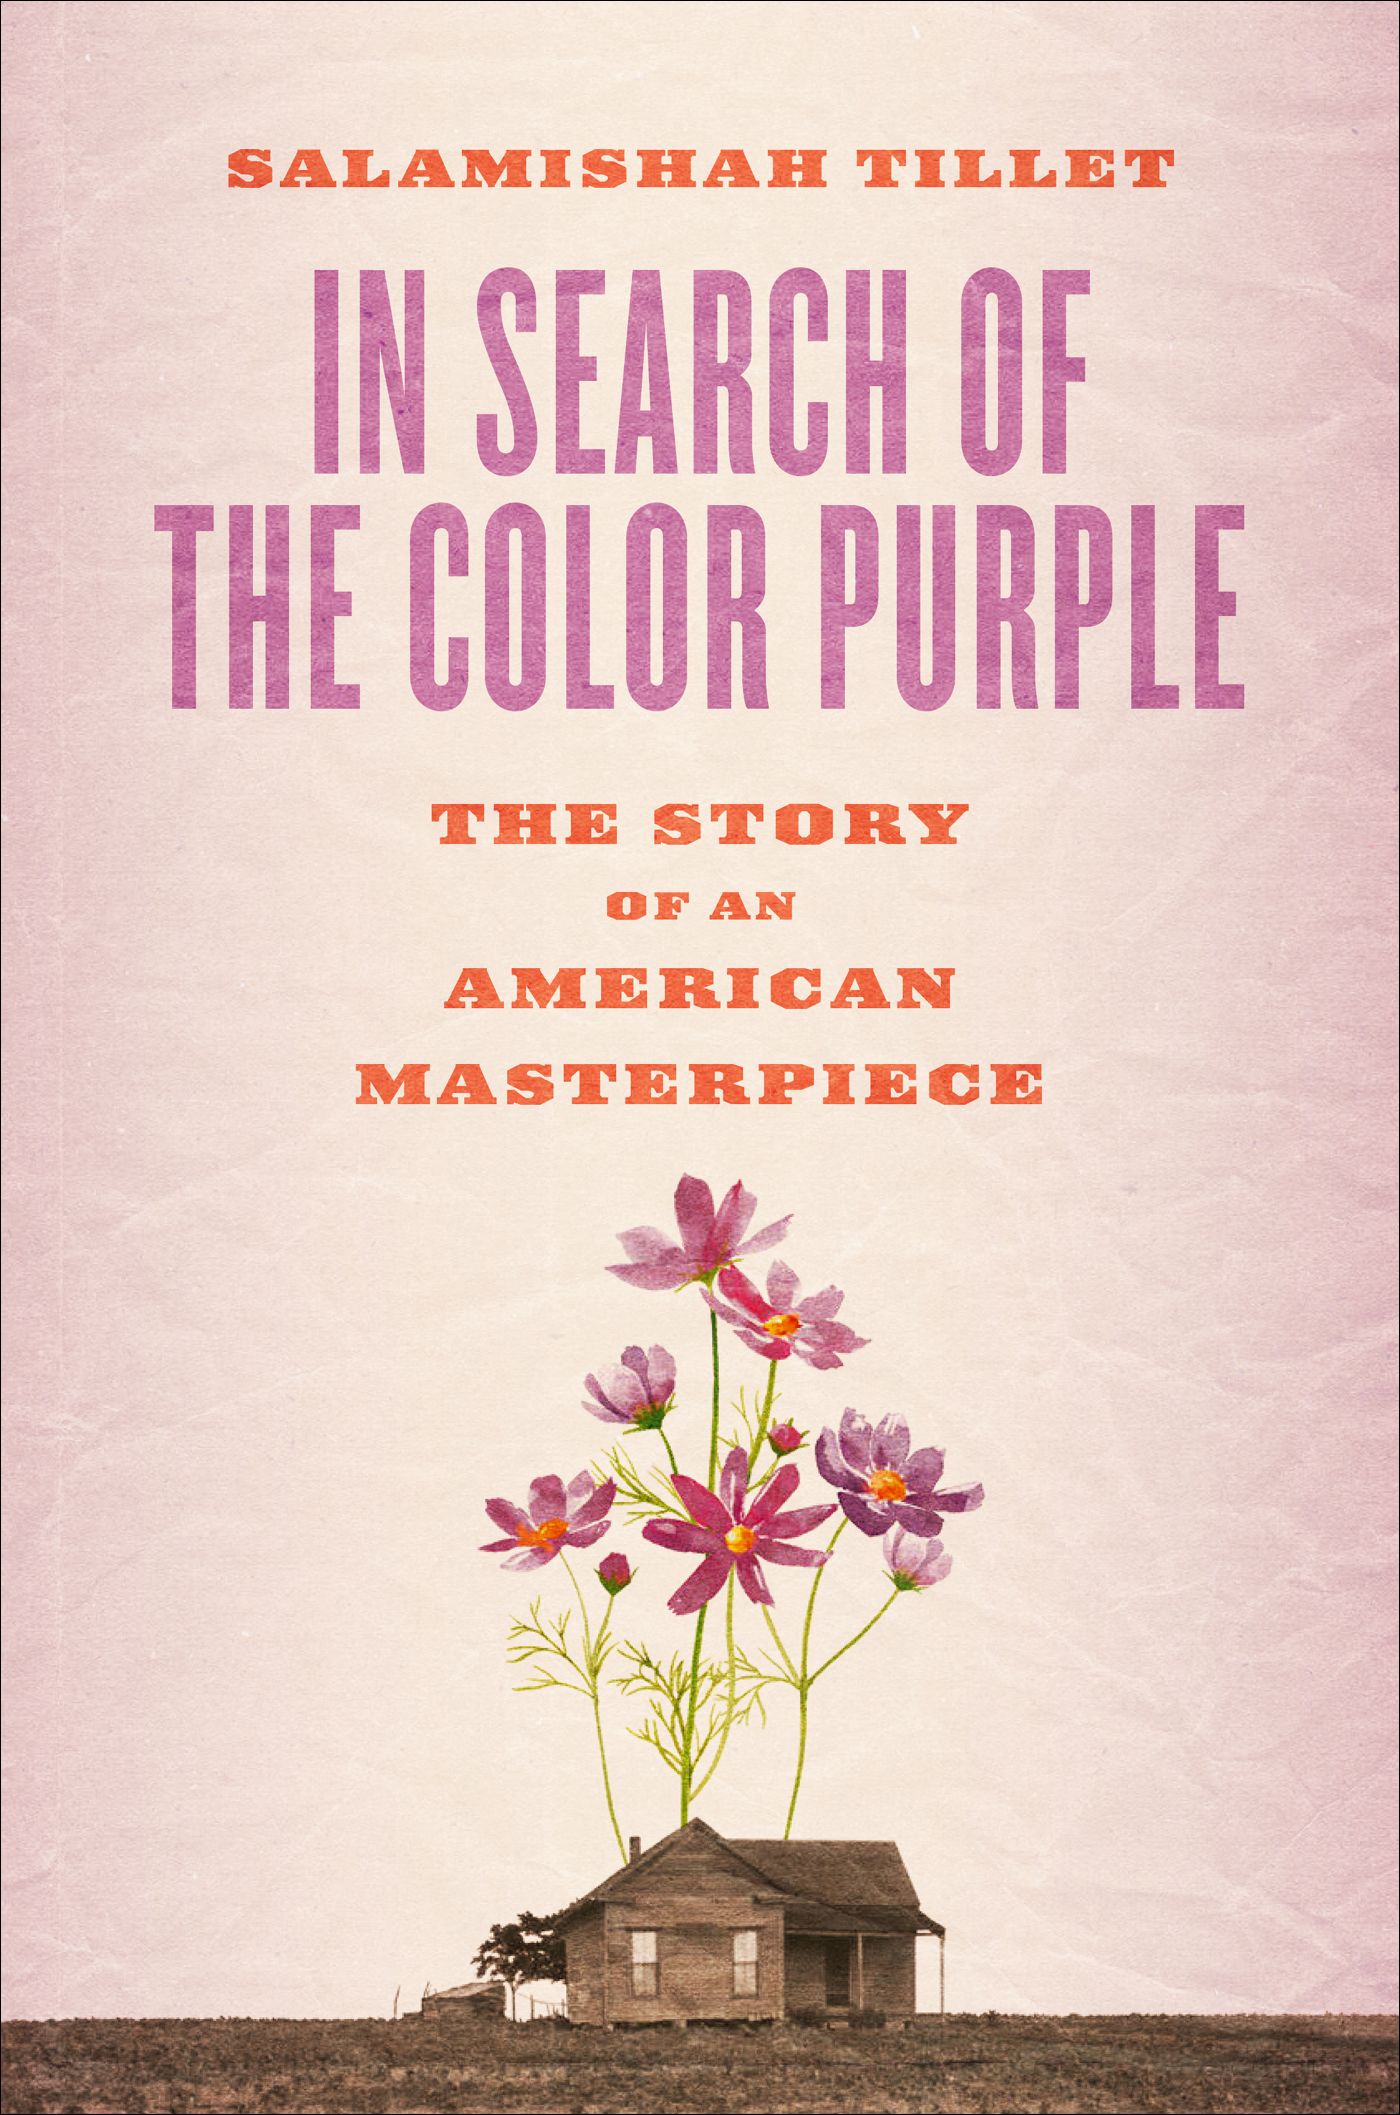 the color purple book